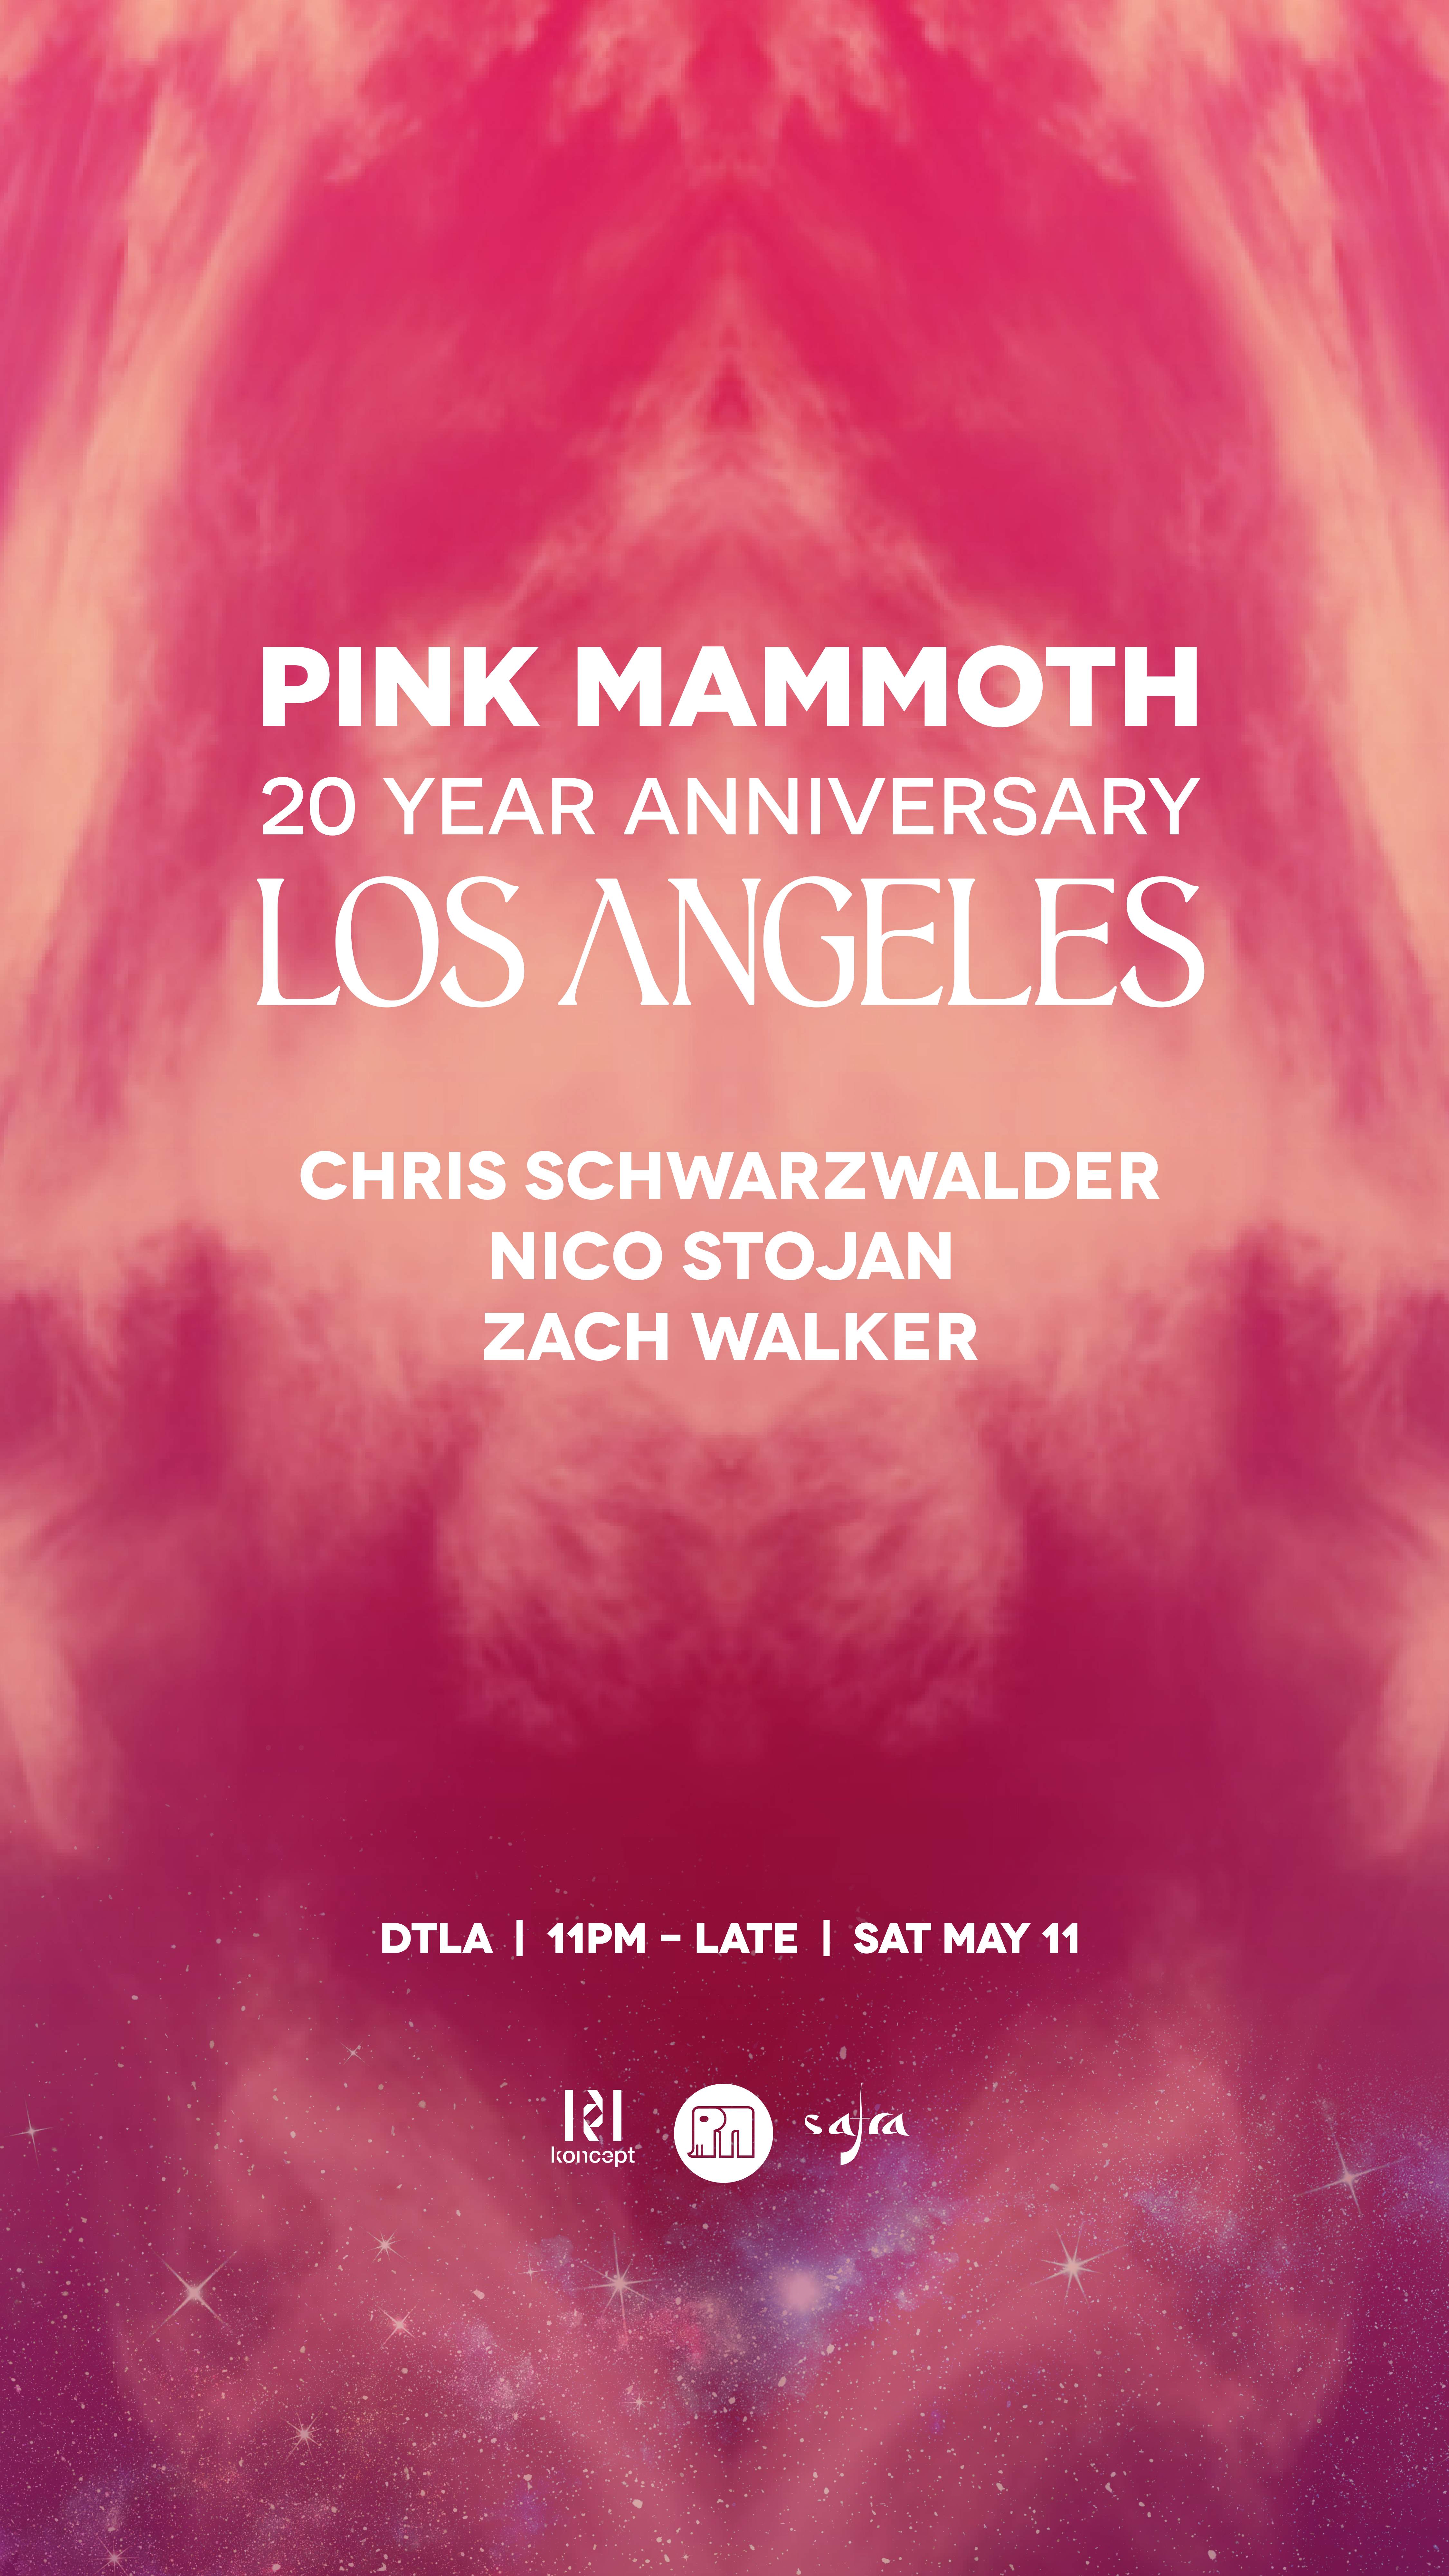 Pink Mammoth 20 Year Anniversay LA Fundraiser with Chris Schwarzwalder + Nico Stojan - フライヤー表